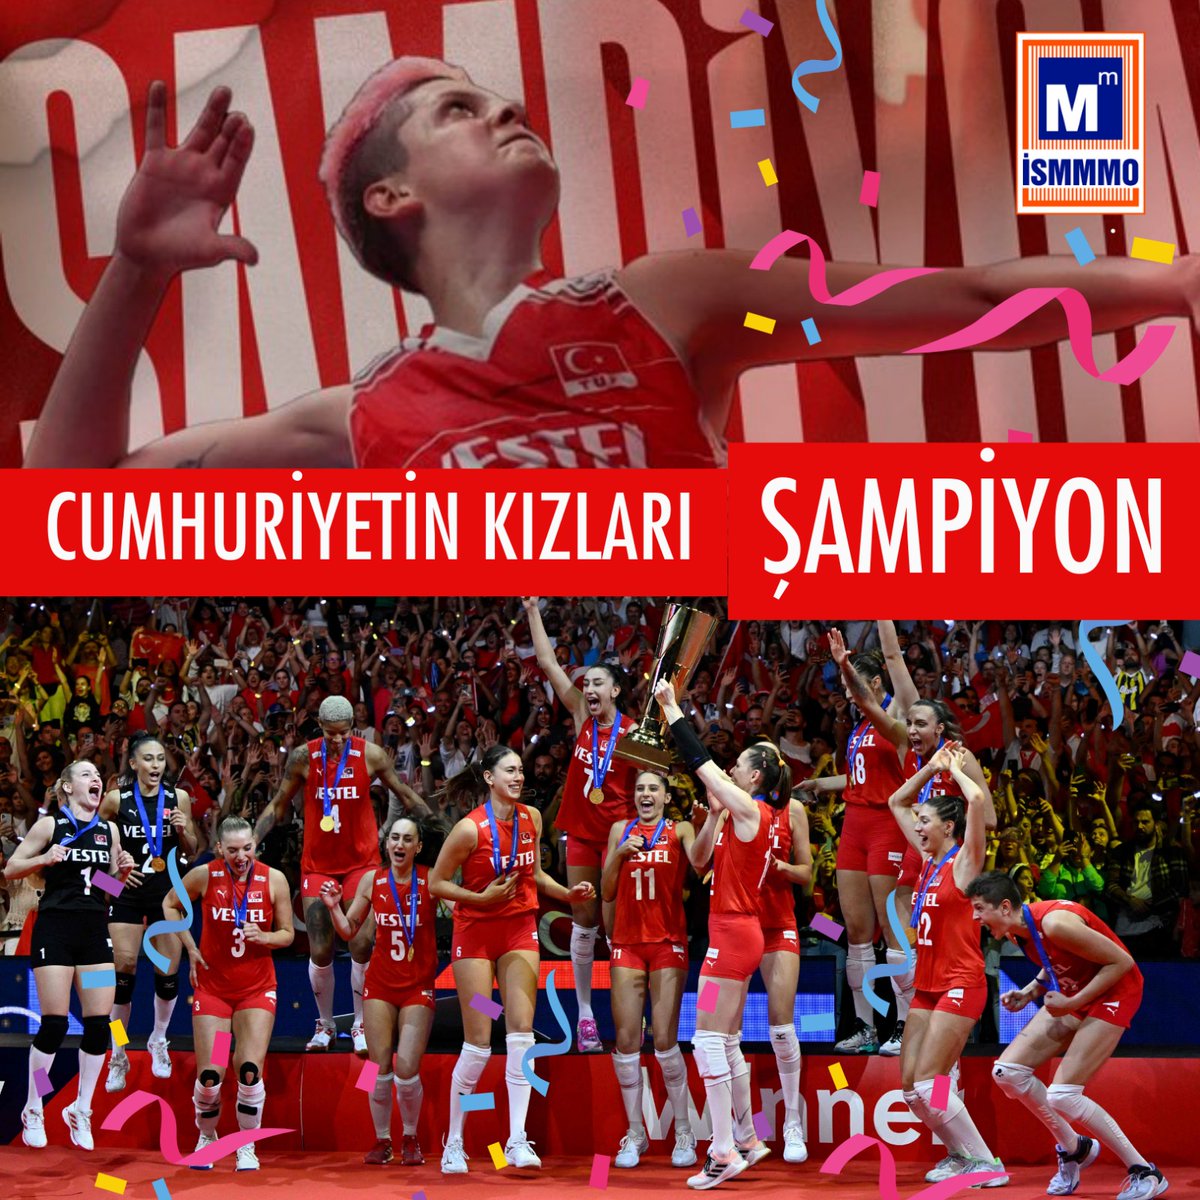 2023 CEV Avrupa Şampiyonası finalinde Sırbistan’ı yenerek şampiyon olan A Milli Kadın Voleybol Takımımızı kutluyoruz. #FileninSultanları
#ismmmo